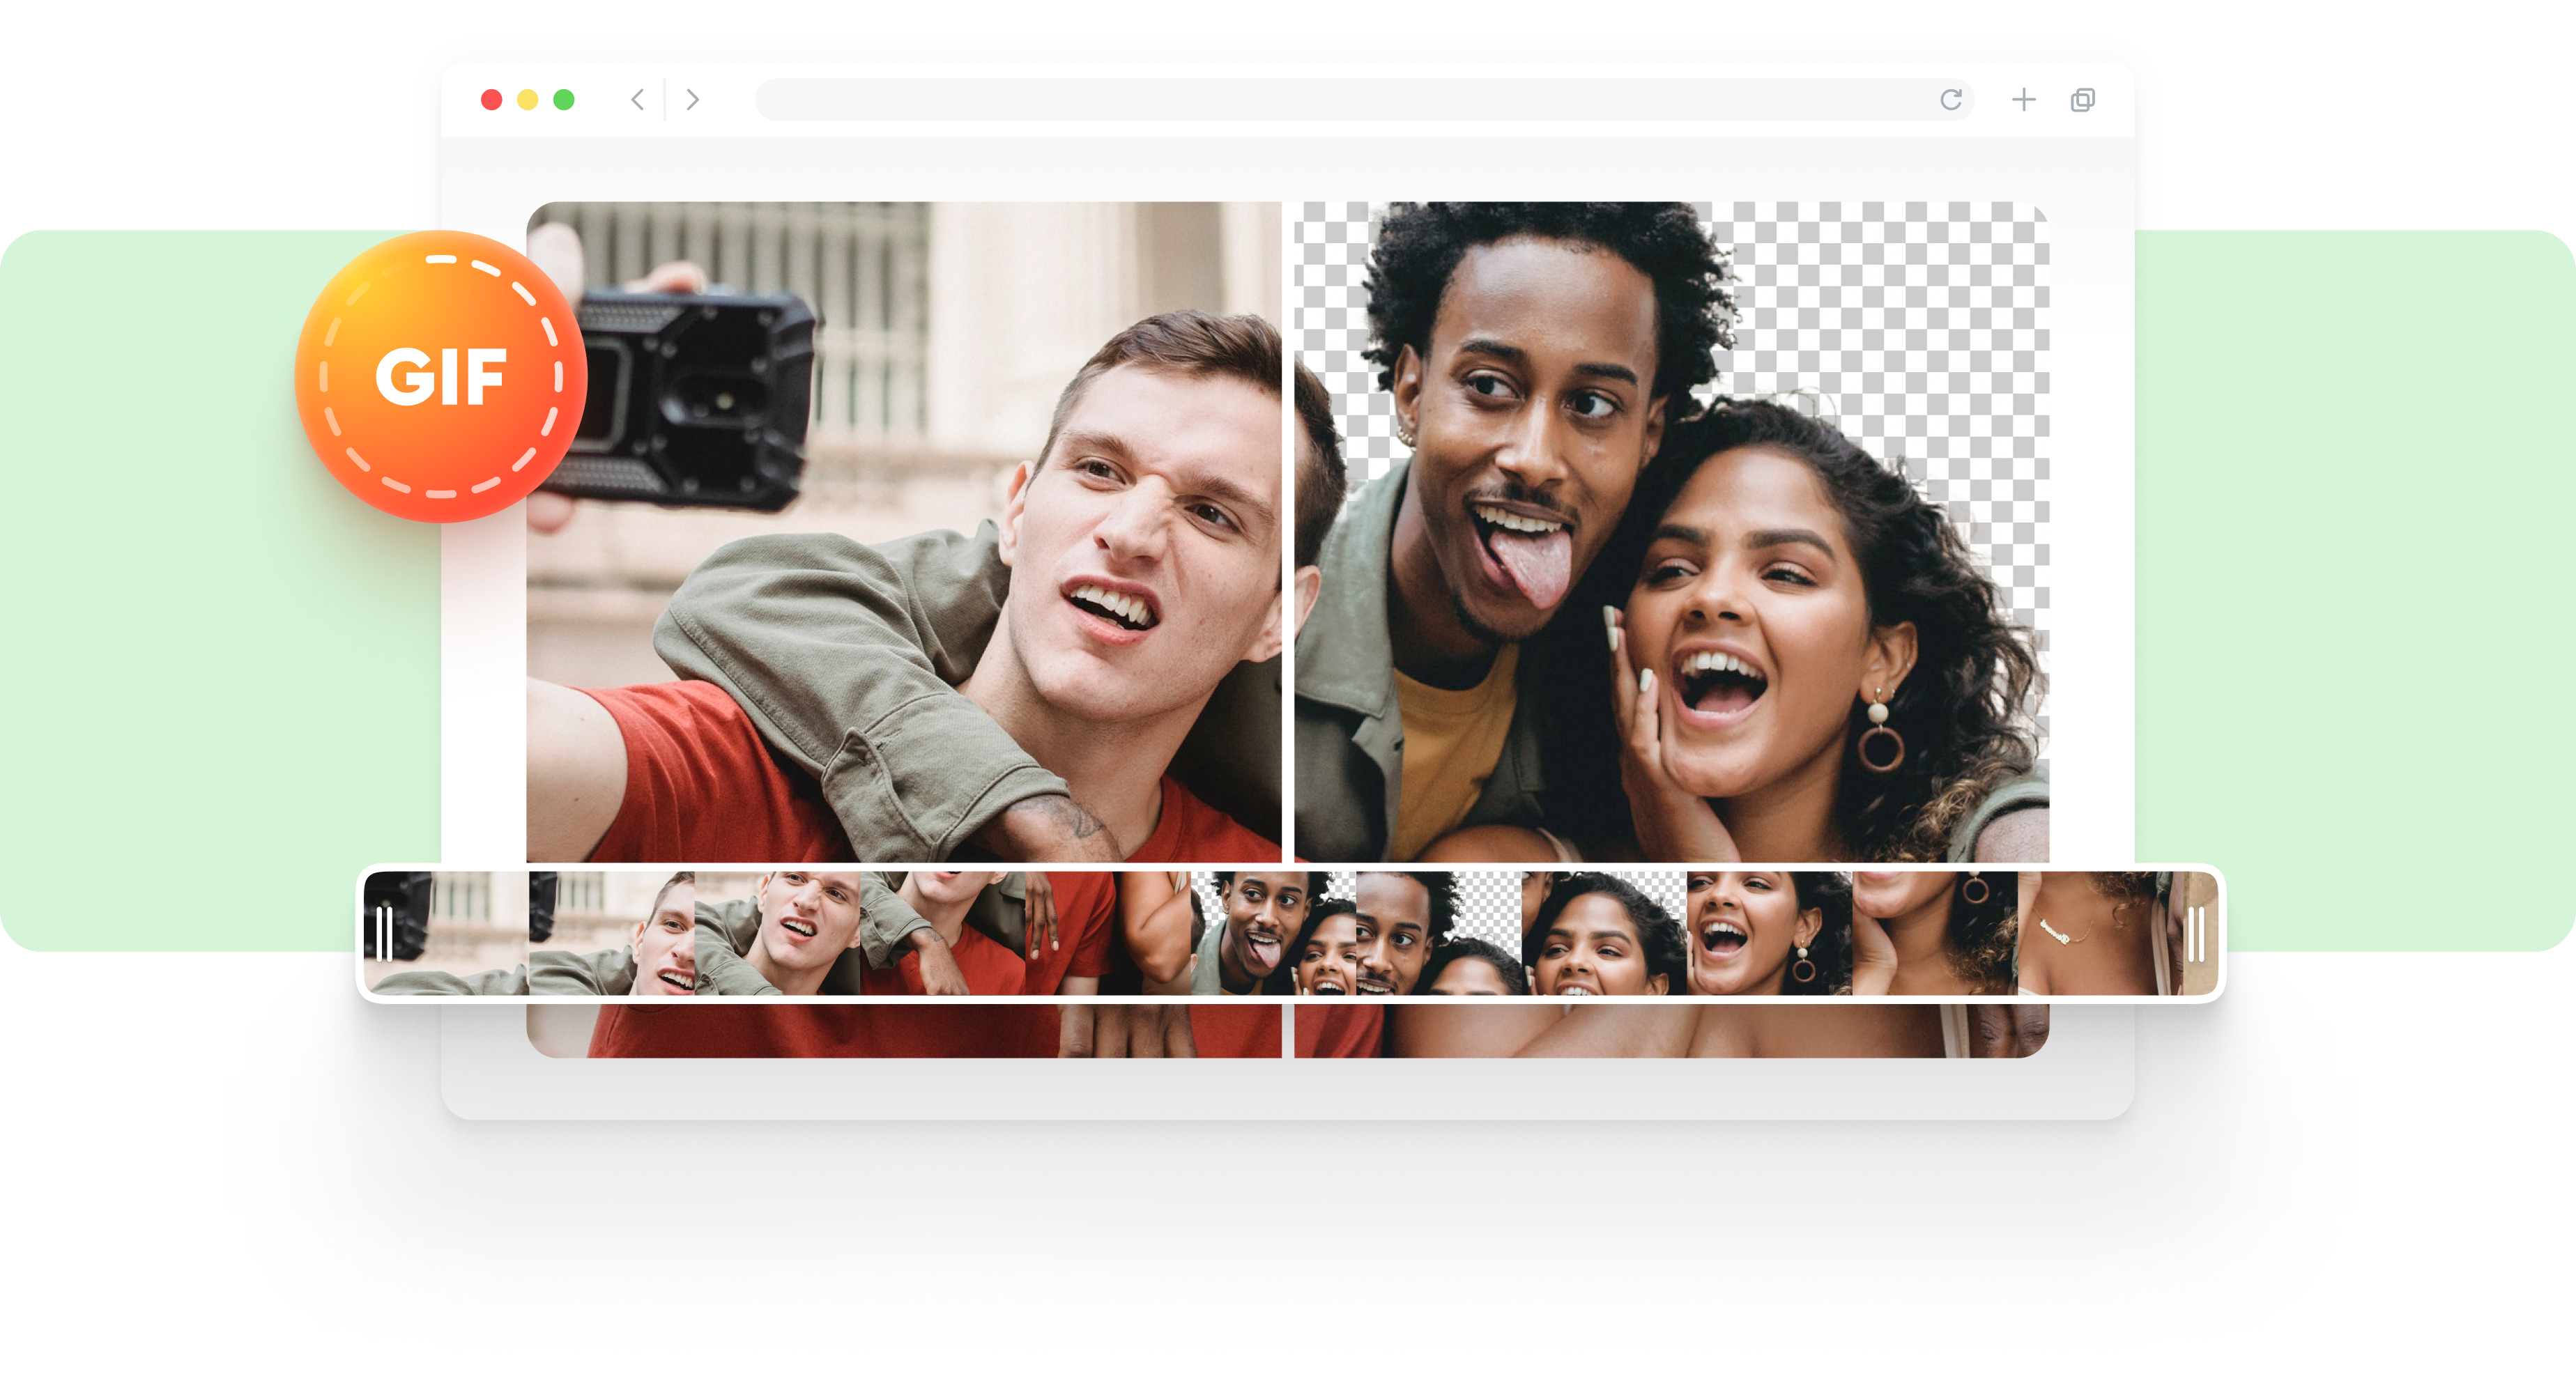 GIF Background Remover là công cụ hỗ trợ tuyệt vời cho việc tạo mẫu độc đáo và sáng tạo. Tạo hình ảnh đẹp kết hợp với khả năng loại bỏ phông nền trong ảnh GIF sẽ giúp cho trang web của bạn trở nên nổi bật và thu hút sự chú ý của khách hàng. Hãy xem hình ảnh liên quan để khám phá ví dụ về cách sử dụng công cụ này.